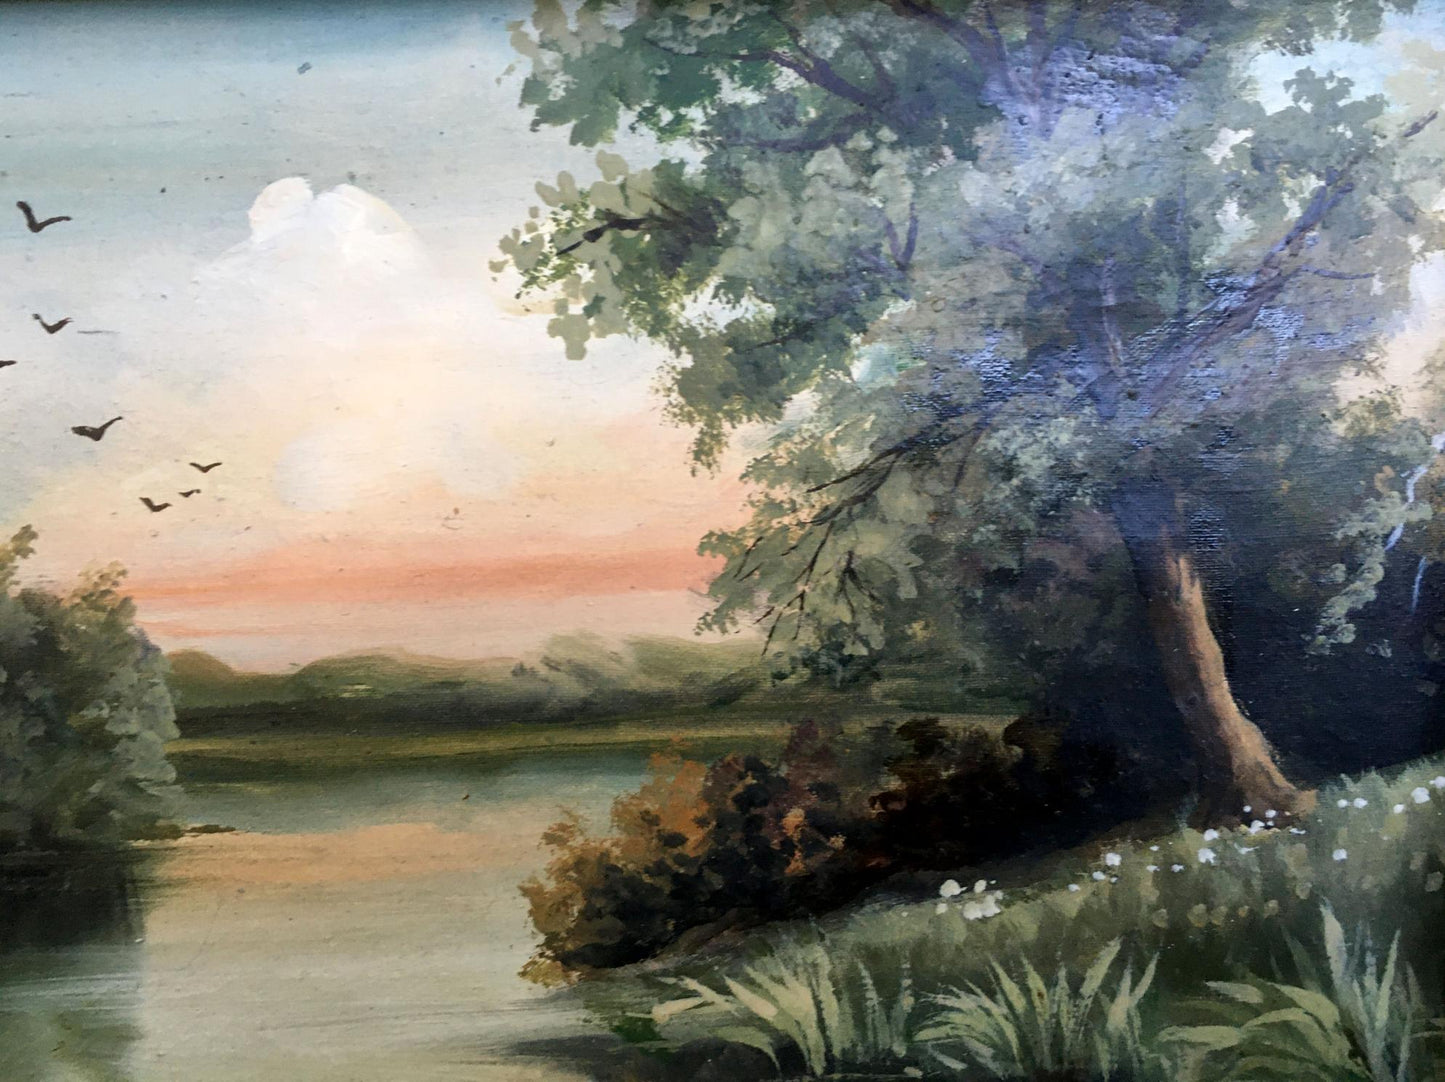 M. Boroshnev's oil painting "Summer Day"